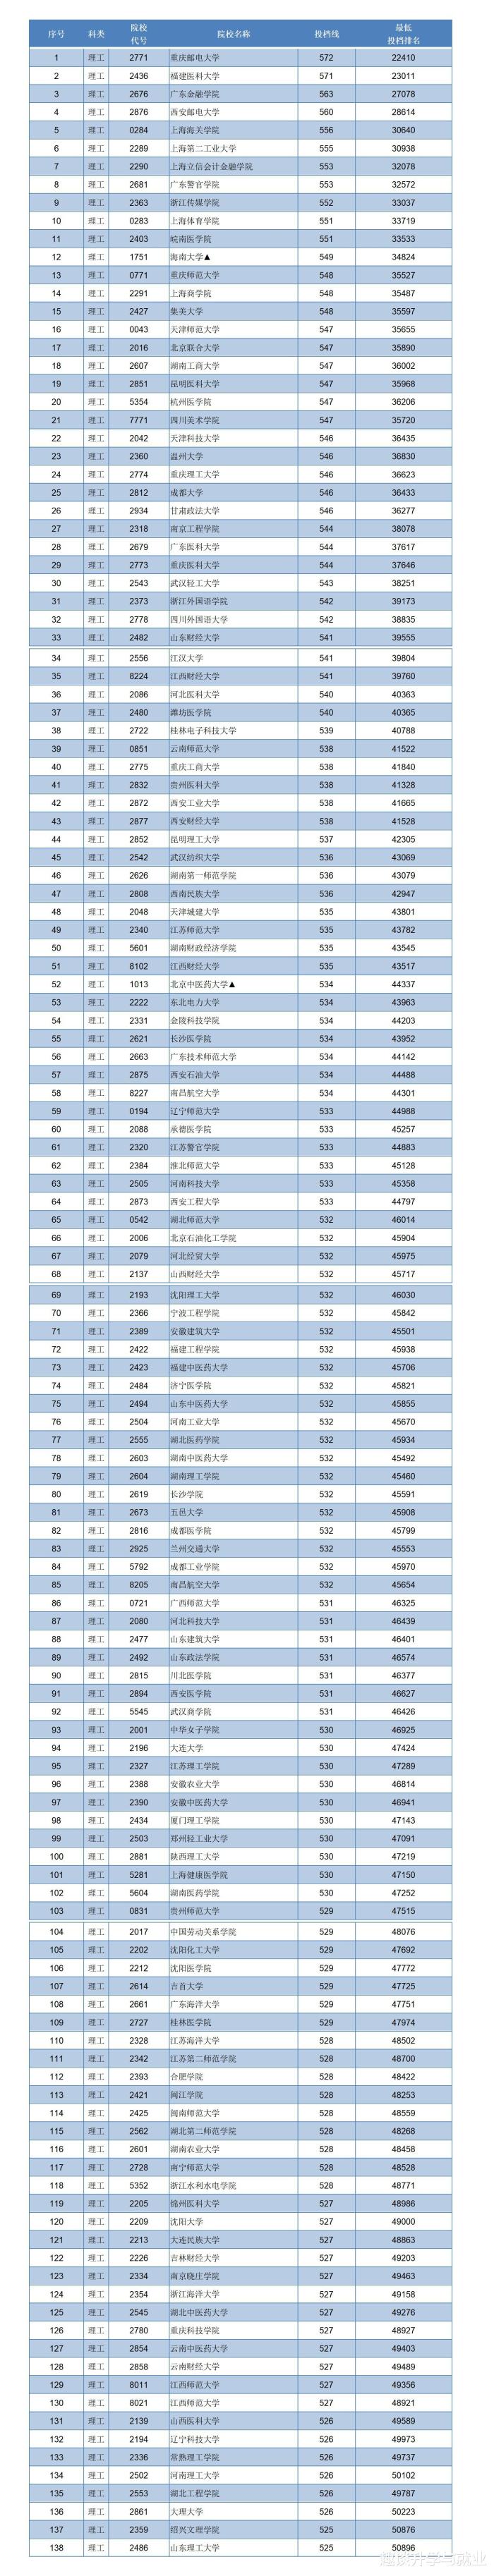 2020江西医科二本大_2019-2020江西中医药大学排名_全国第255名